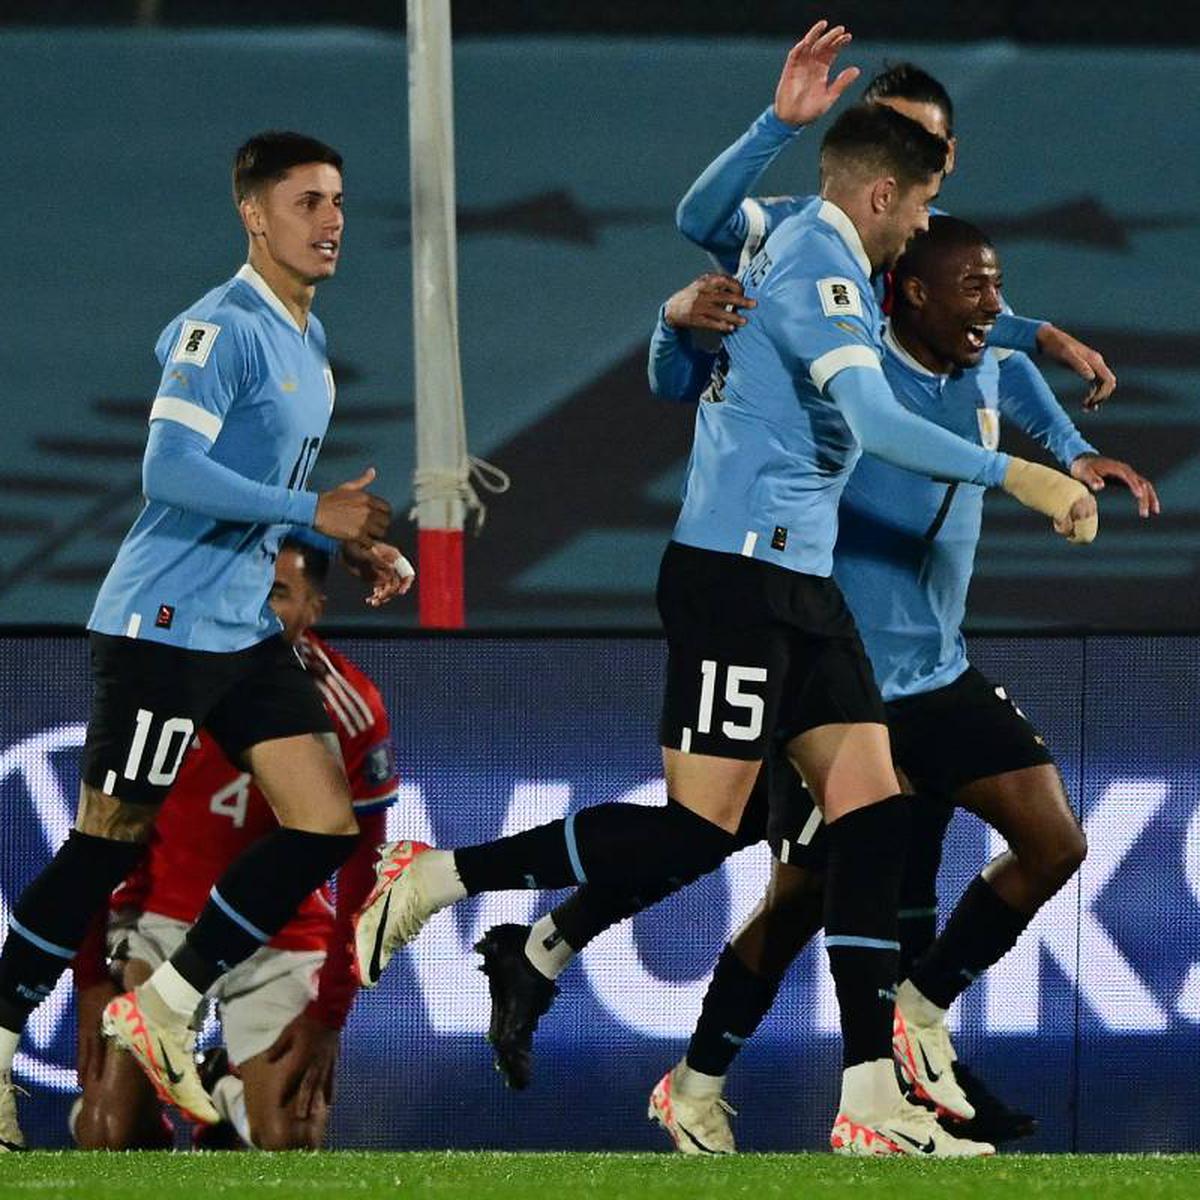 Eliminatorias Sudamericanas 2026: Cuándo y a qué hora es Uruguay vs Chile,  dónde ver el partido y alineaciones probables